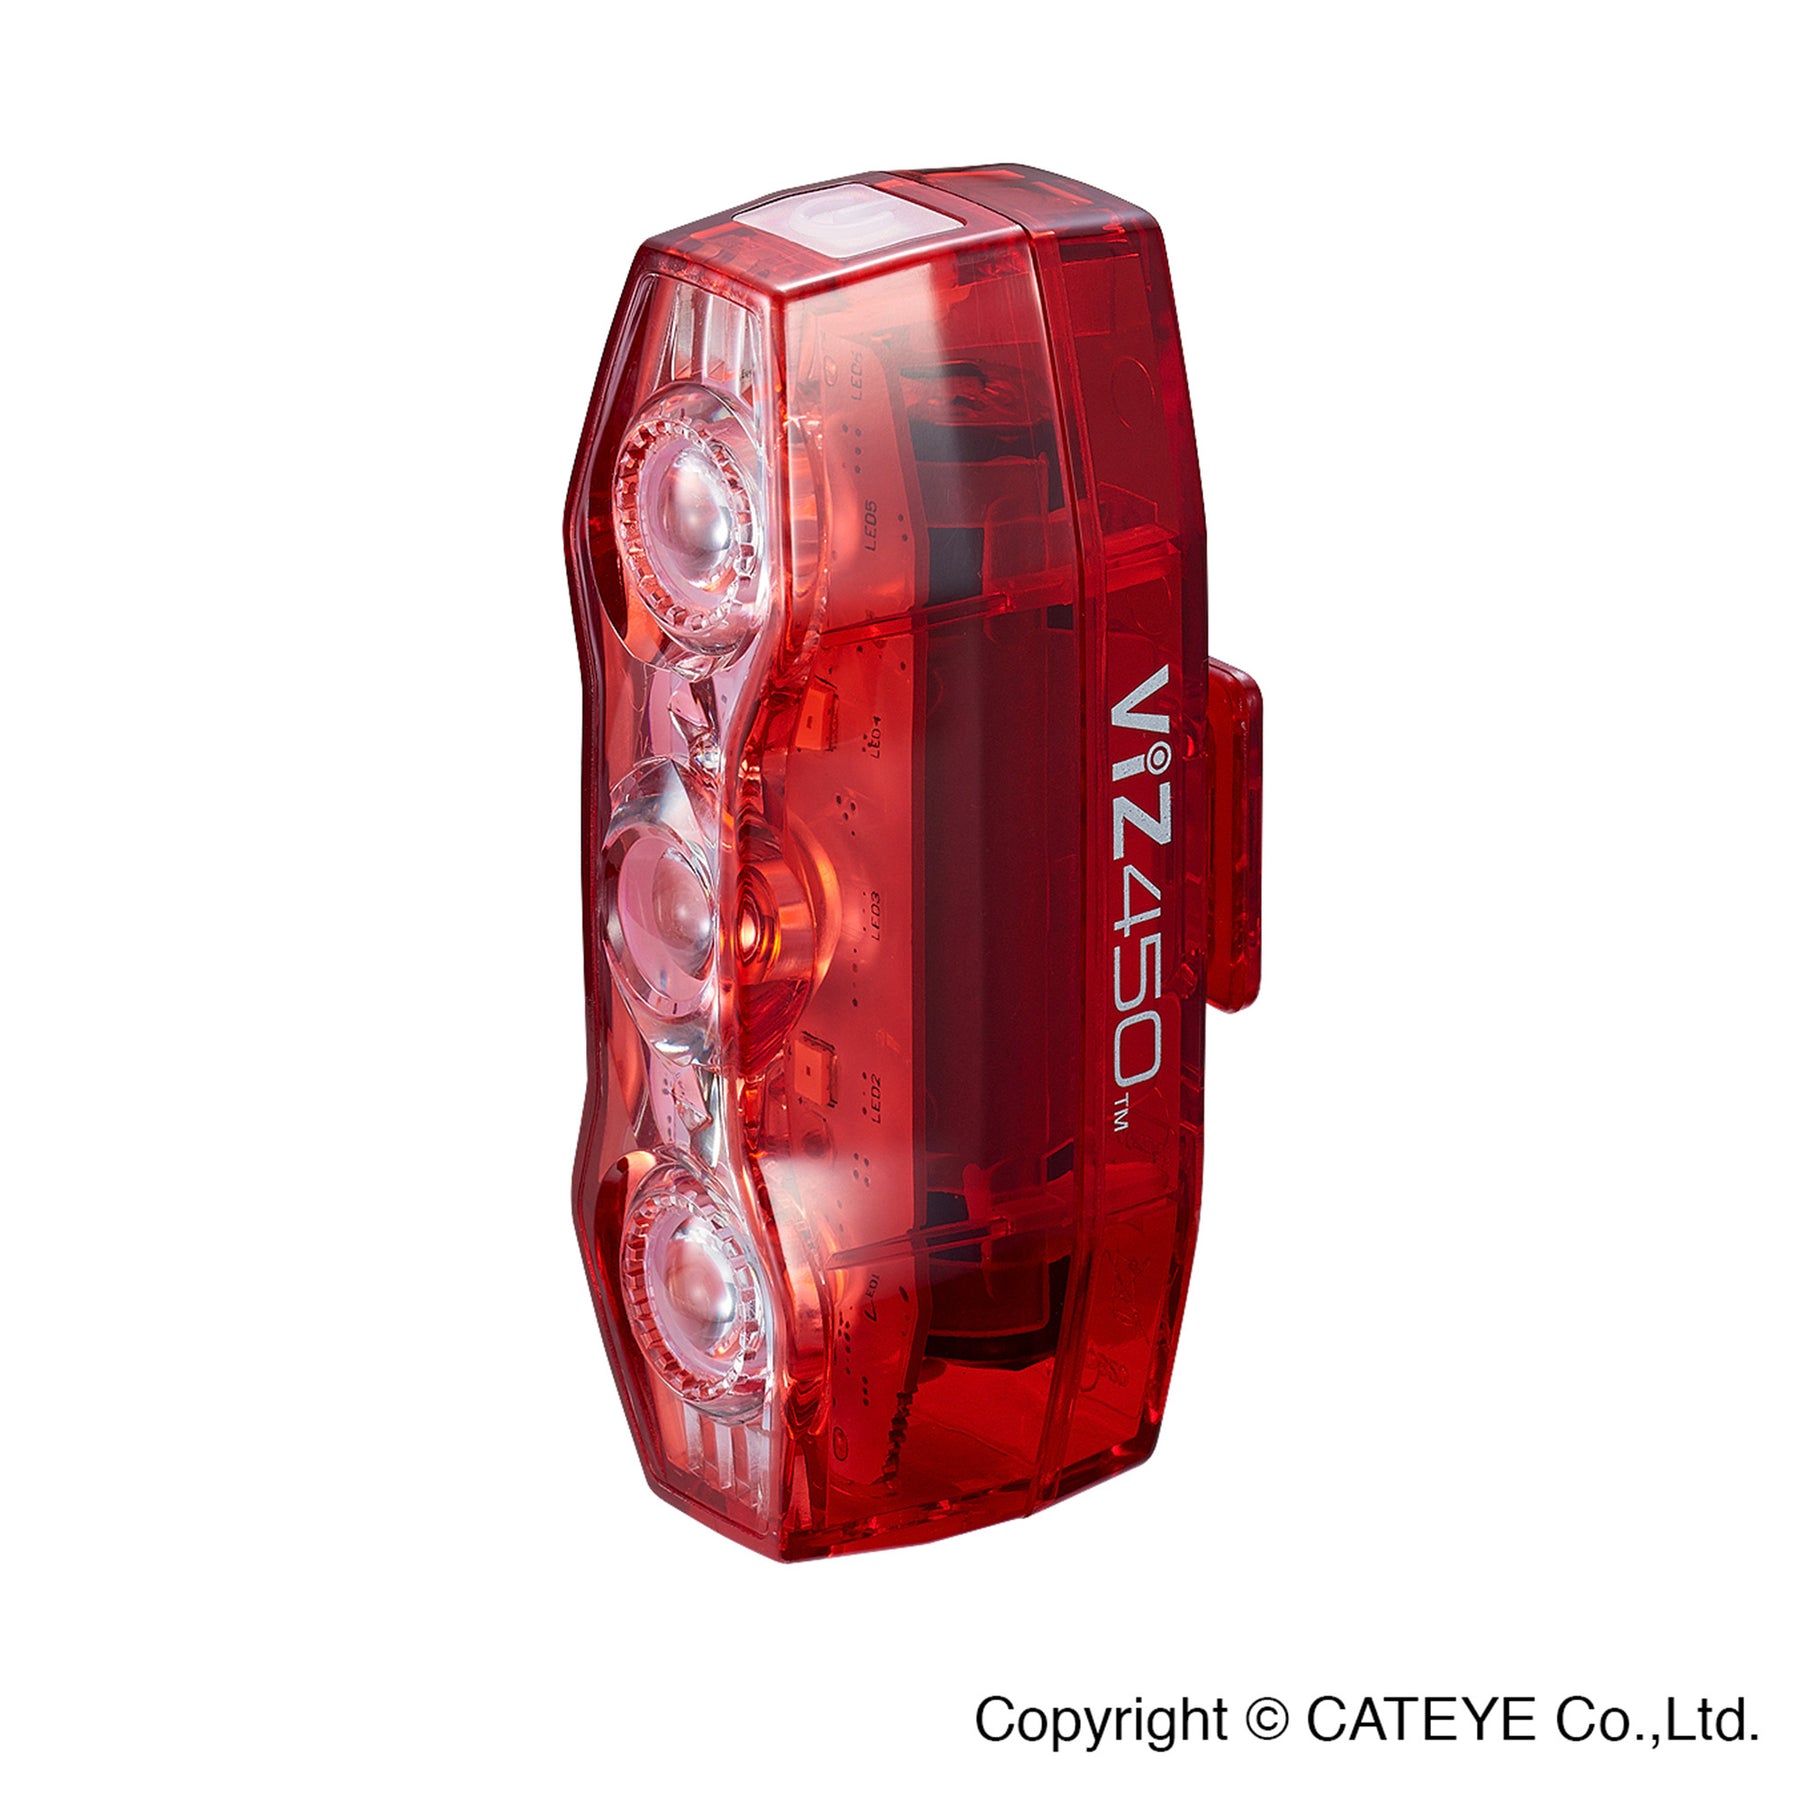 Cateye Viz 450 Rear Bike Light